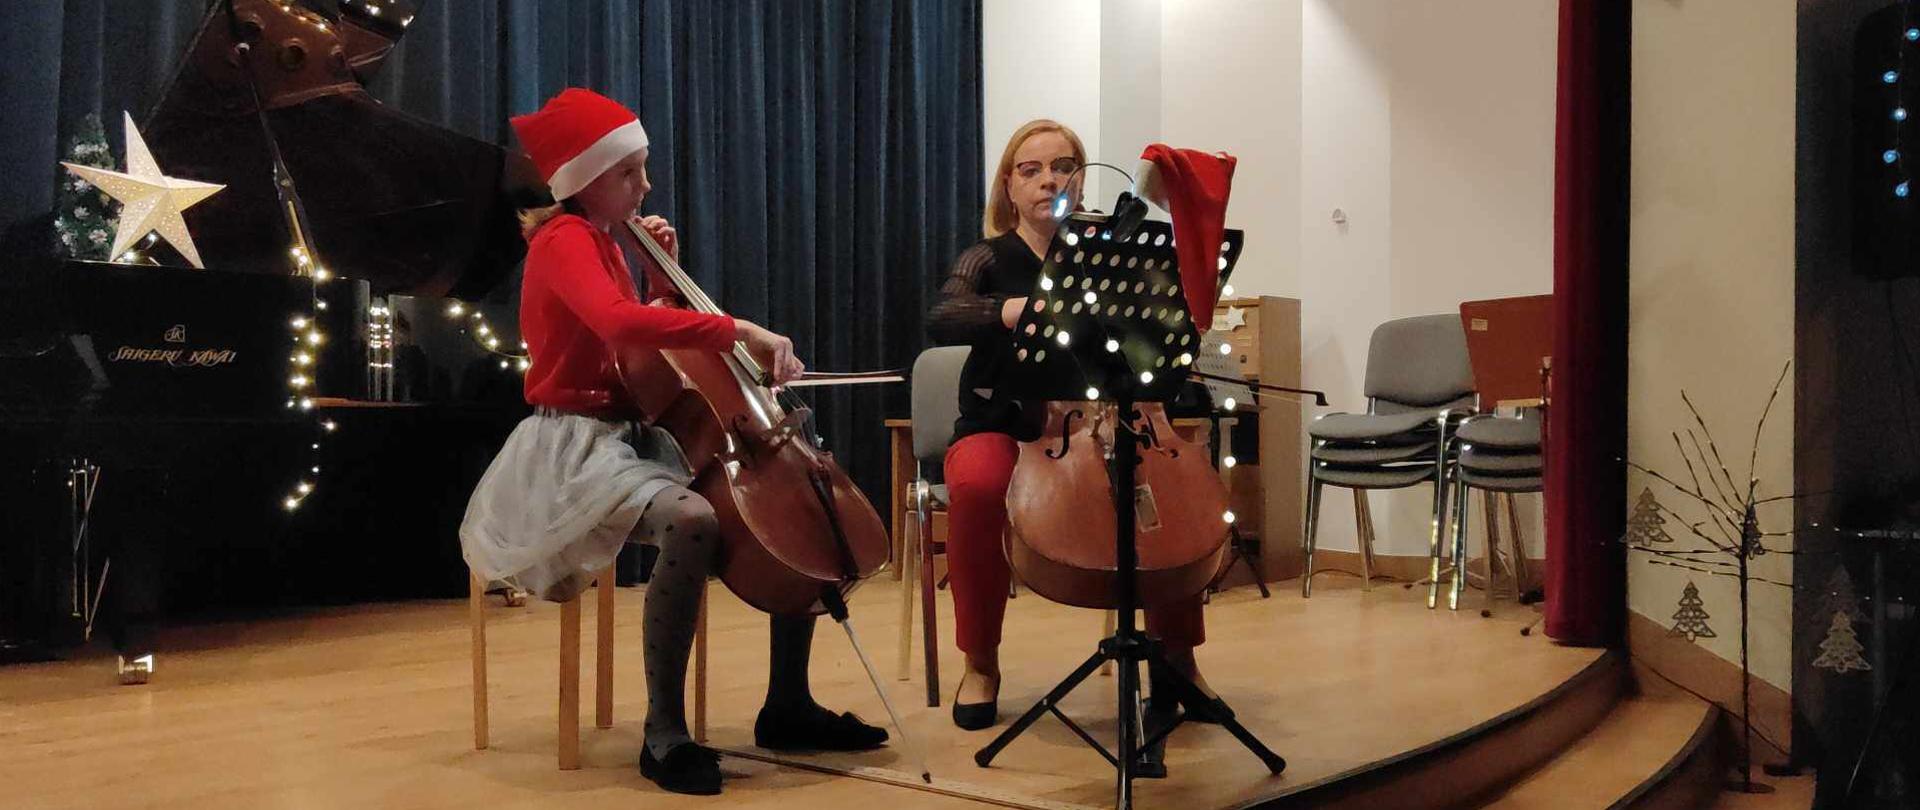 Na świątecznie przystrojonej scenie znajdują się uczennica i nauczycielka, grające na wiolonczelach.